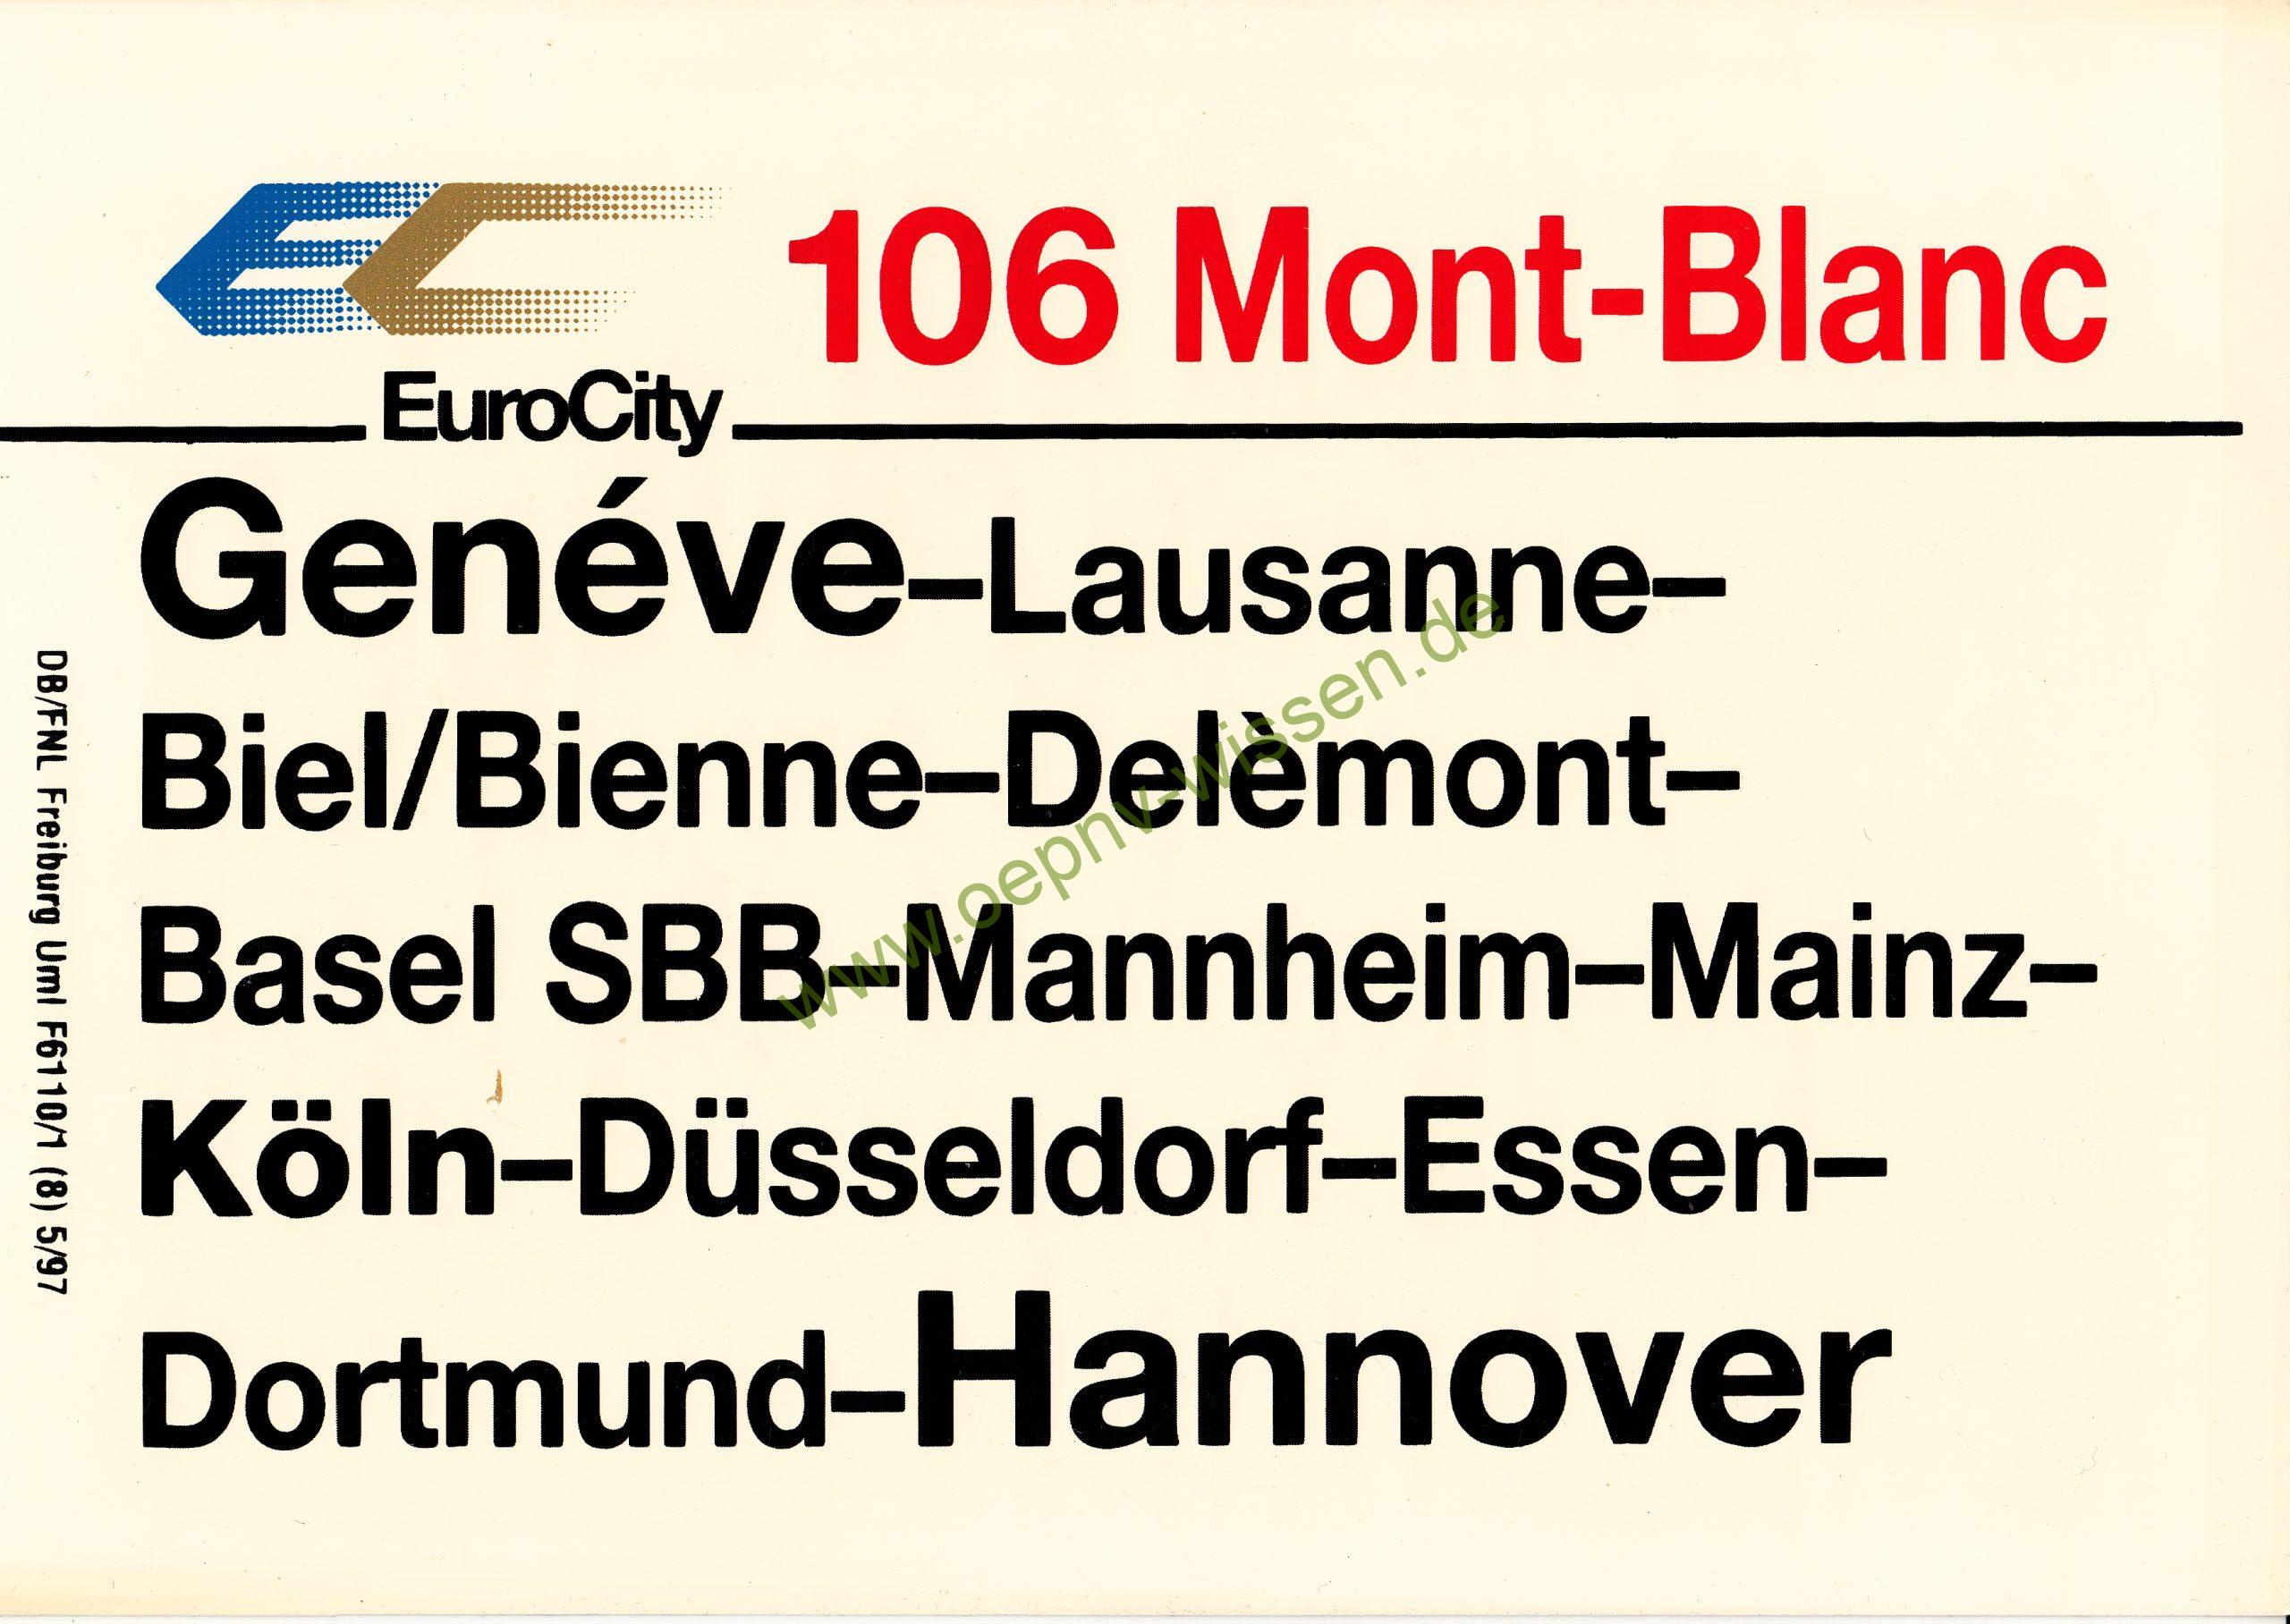 EC 106 Mon Blanc